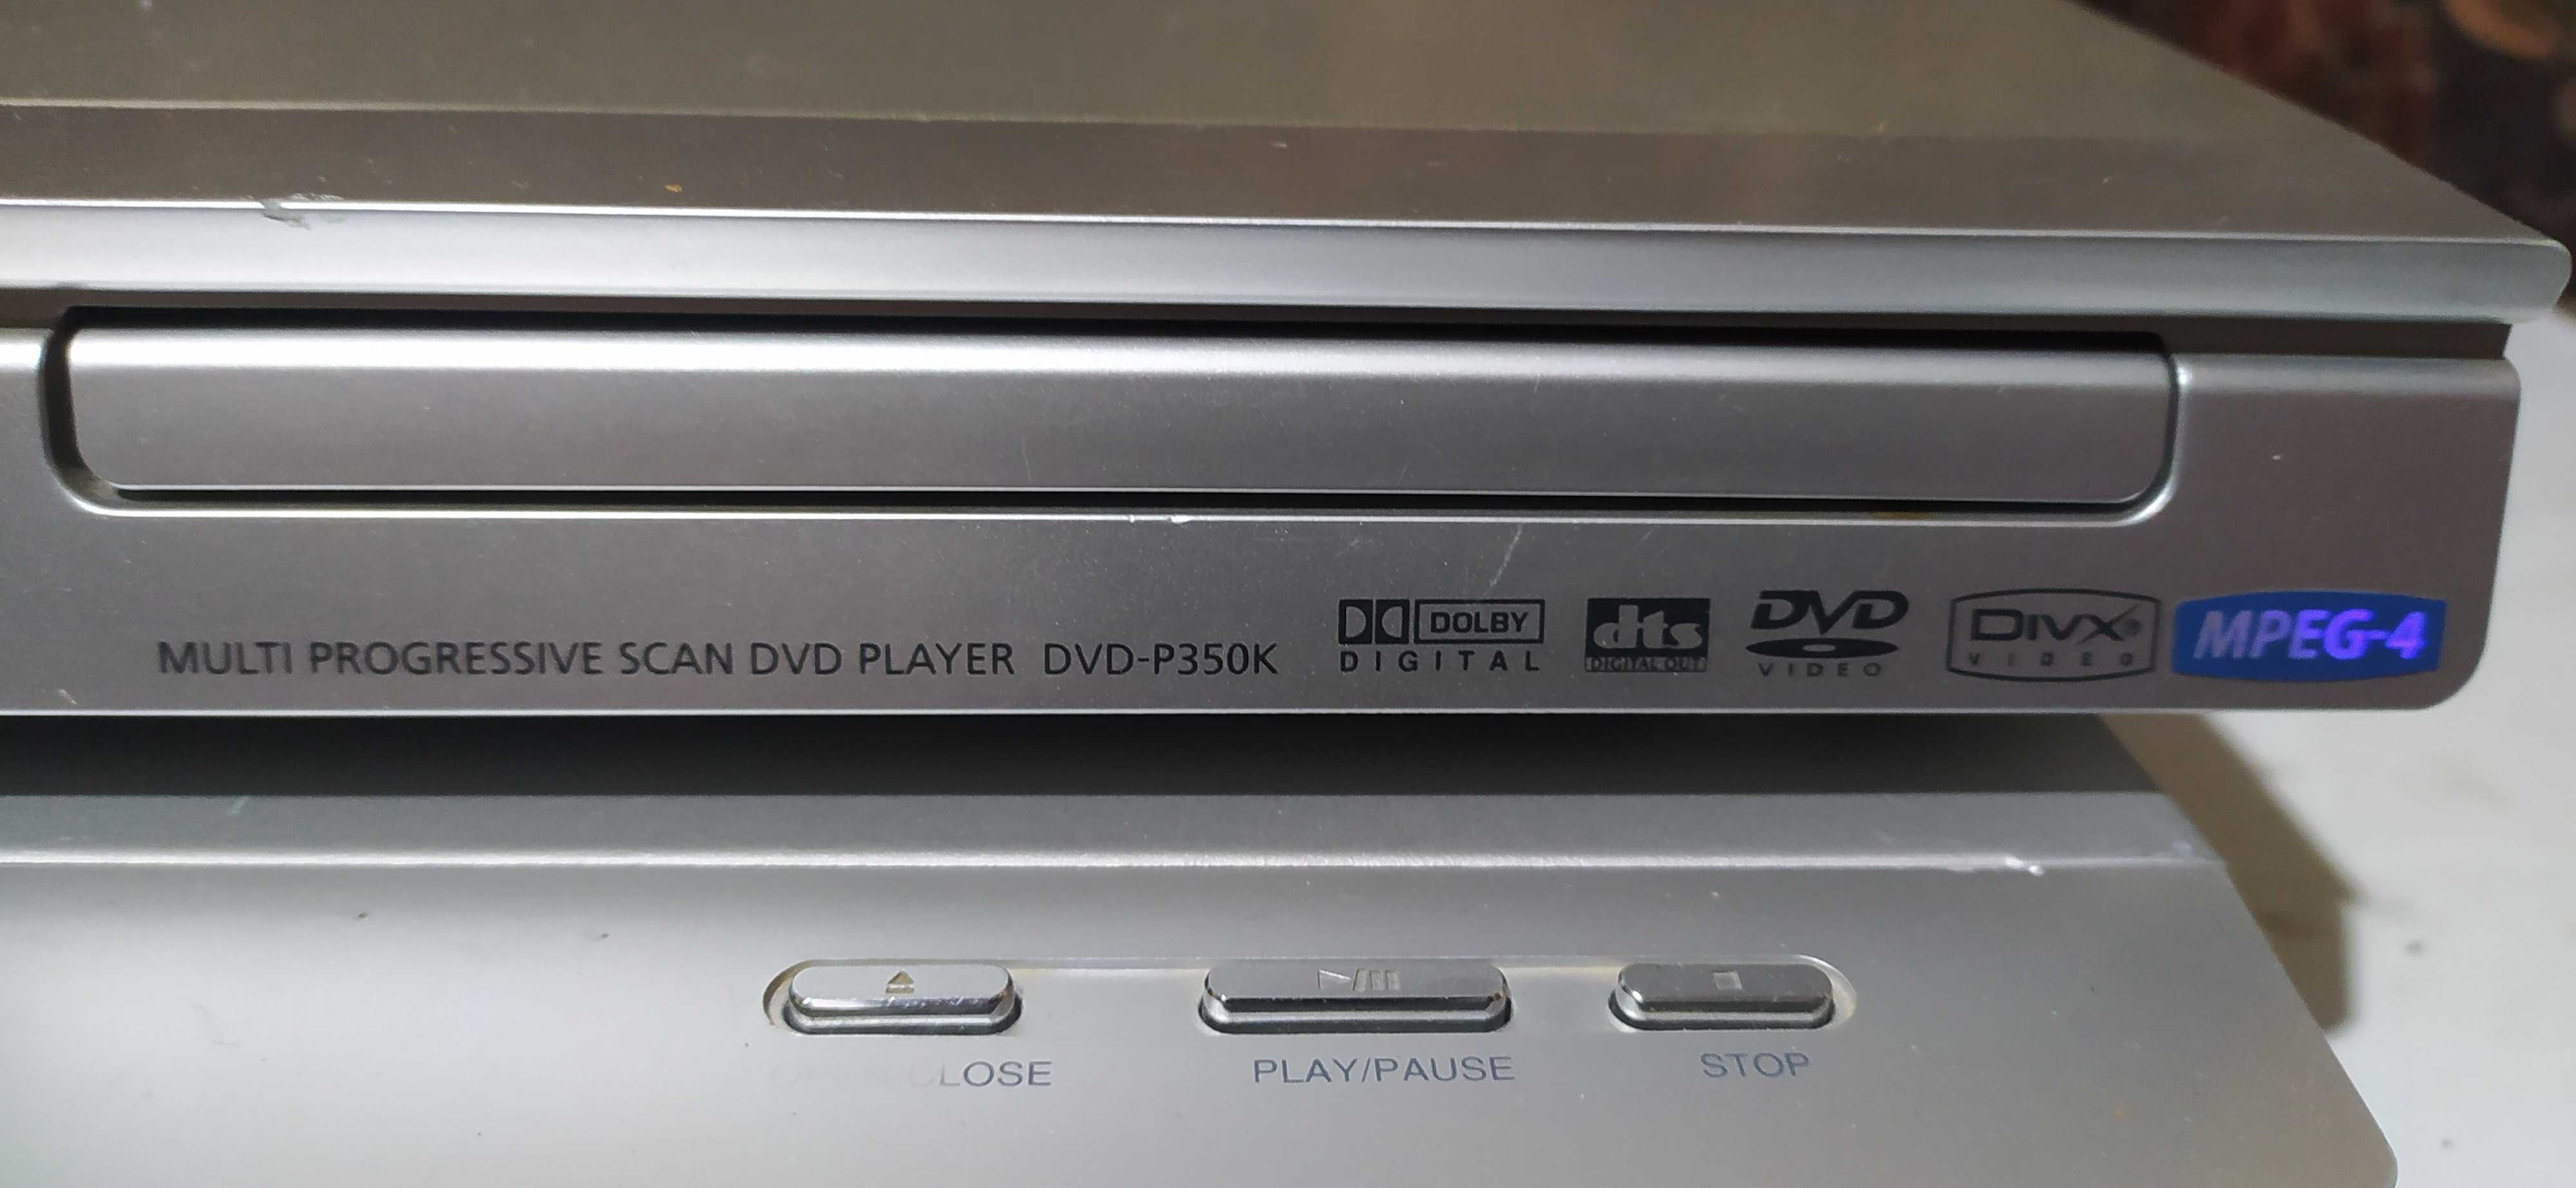 Два dvd плеера одним лотом bbk dv516si samsung dvd-p350k